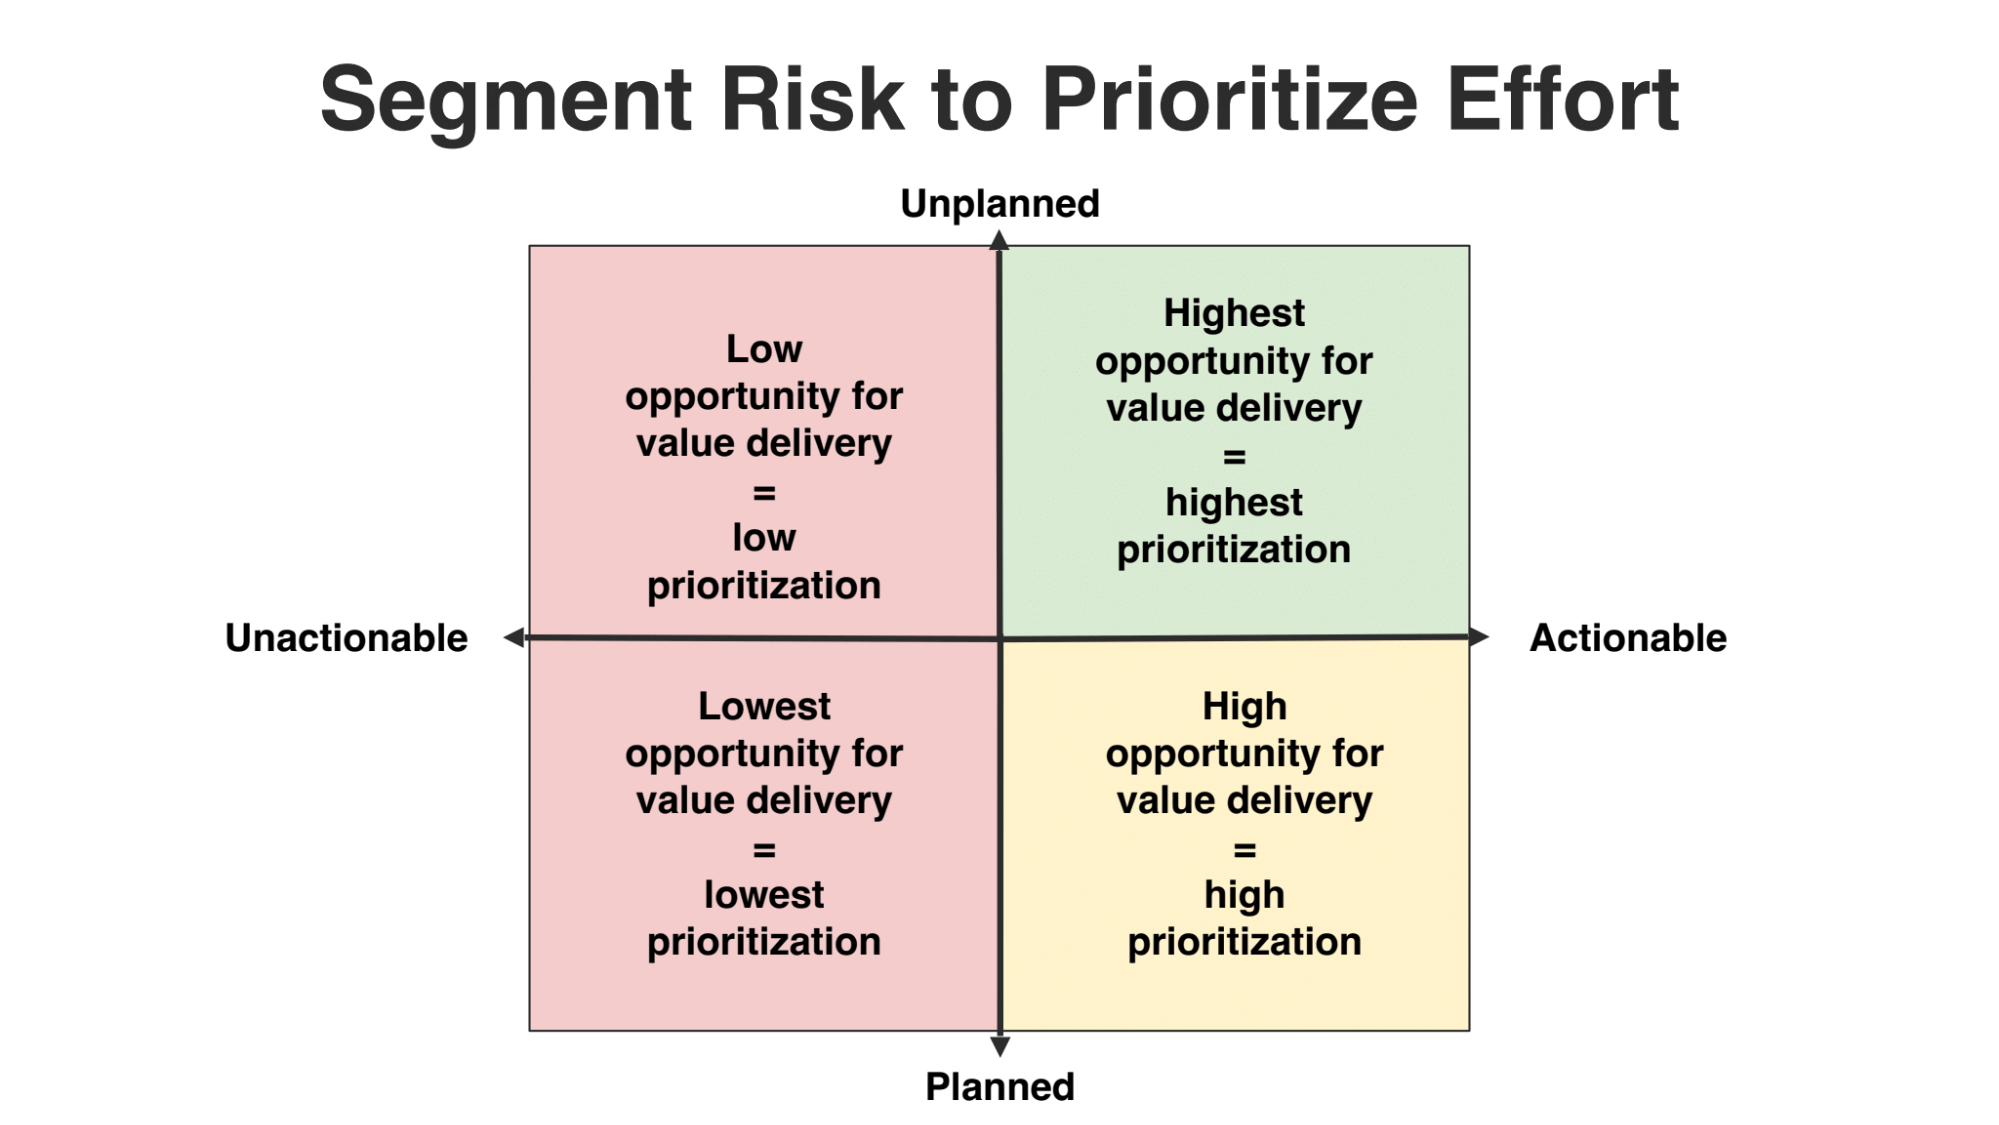 Segment risk to prioritize effort